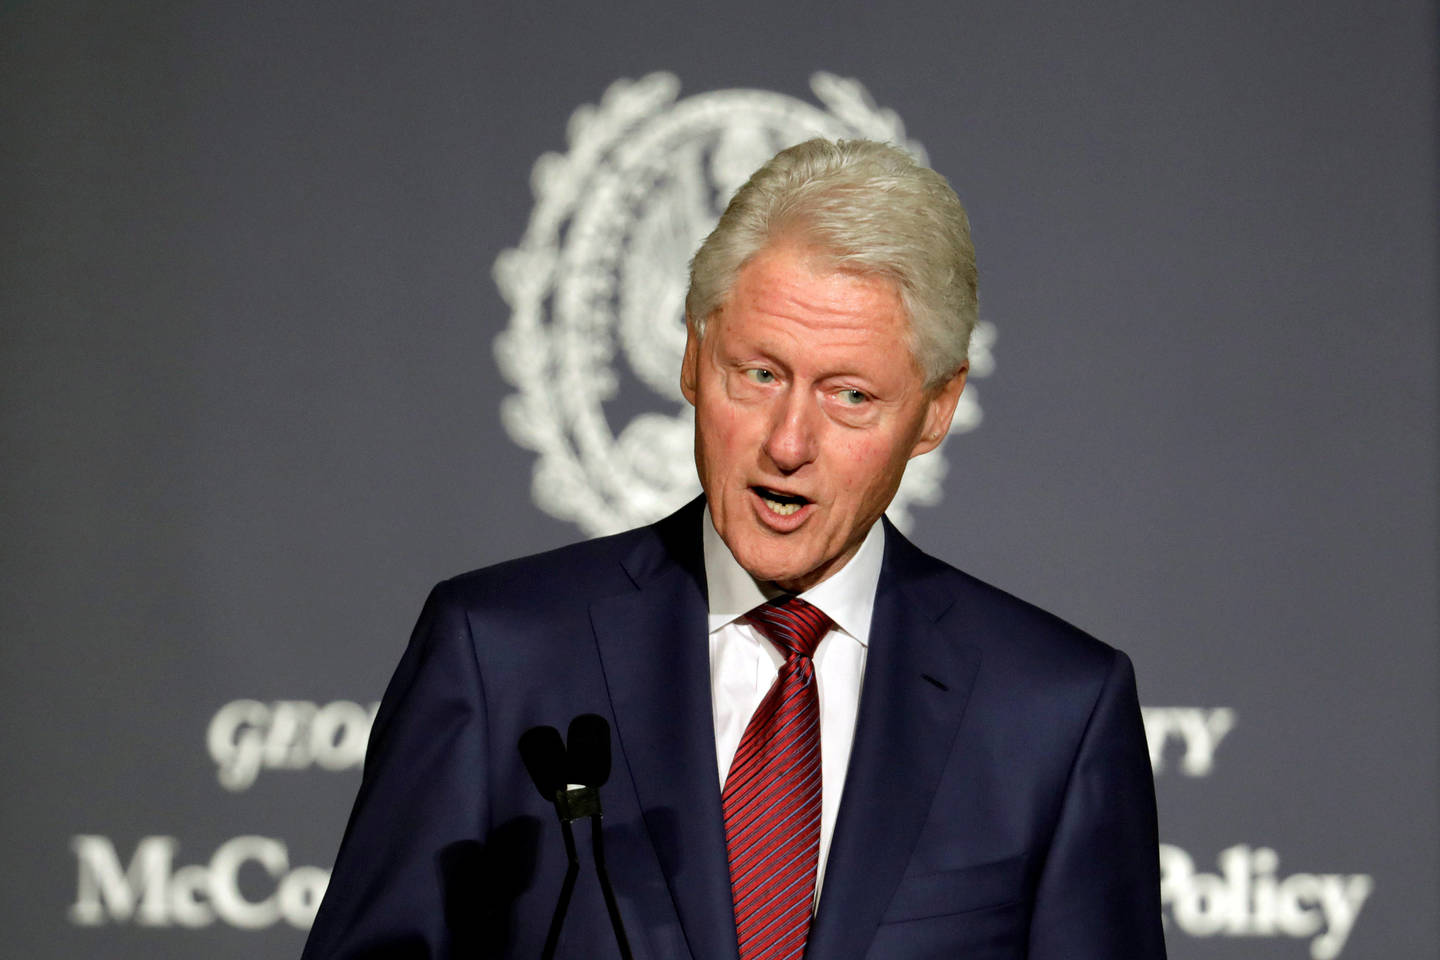  B.Clintonas mėgdavo skambinti žmonėms vidury nakties.<br> „Reuters“/„Scanpix“ nuotr.